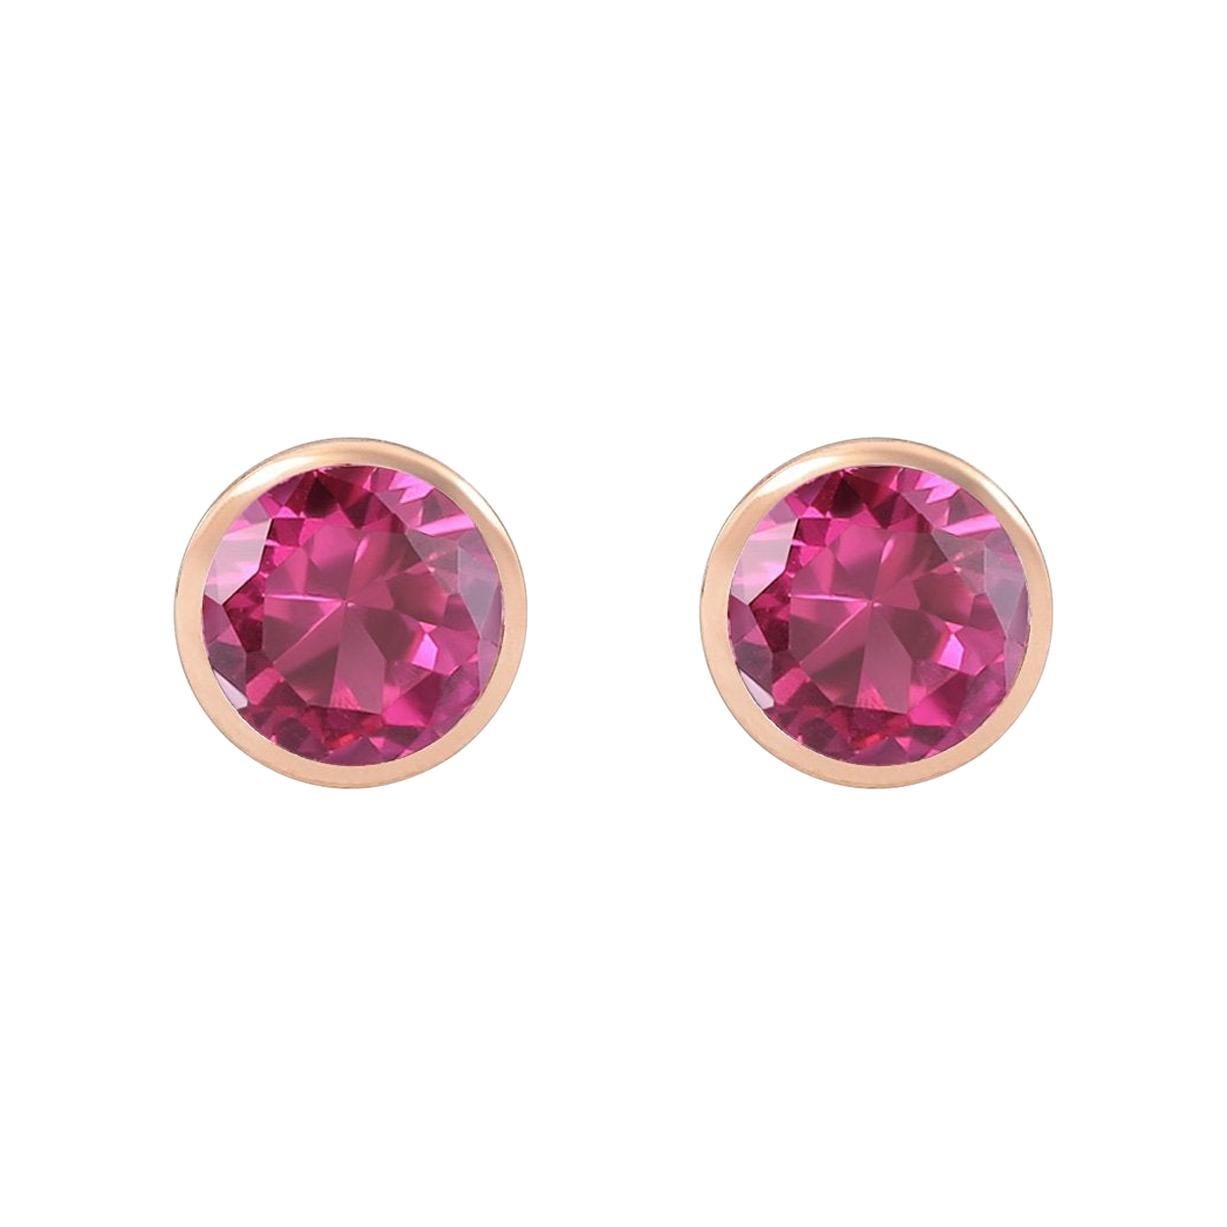 2.60 and 7.10 Carats Pink Tourmalines 18 Karat Rose Gold Drop Earrings ...